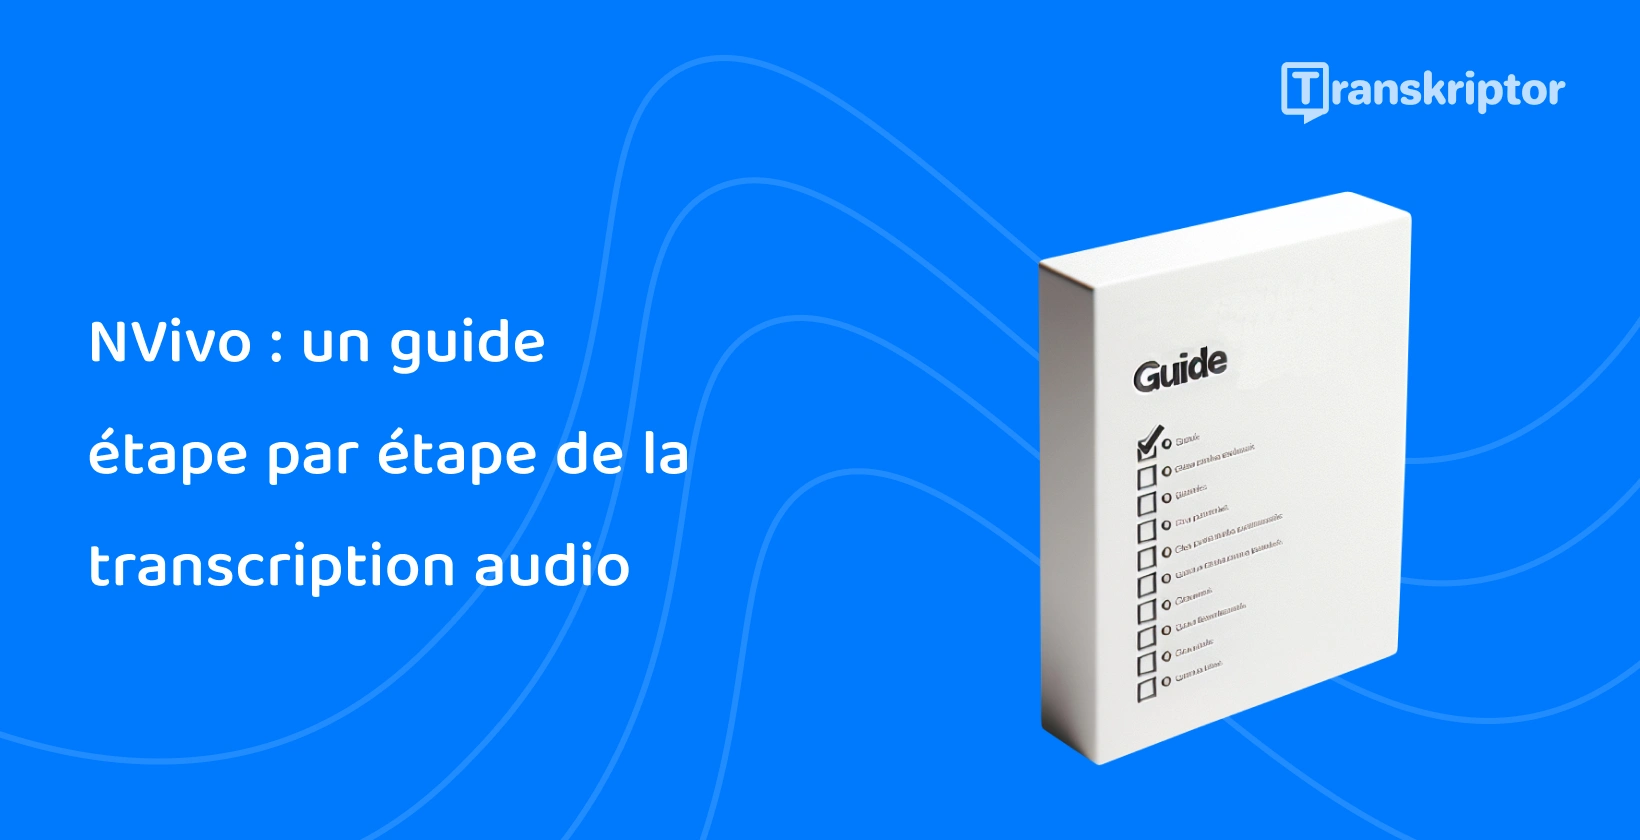 Un guide étape par étape sur fond bleu, détaillant la méthode de NVivo pour transcrire efficacement l’audio en texte.